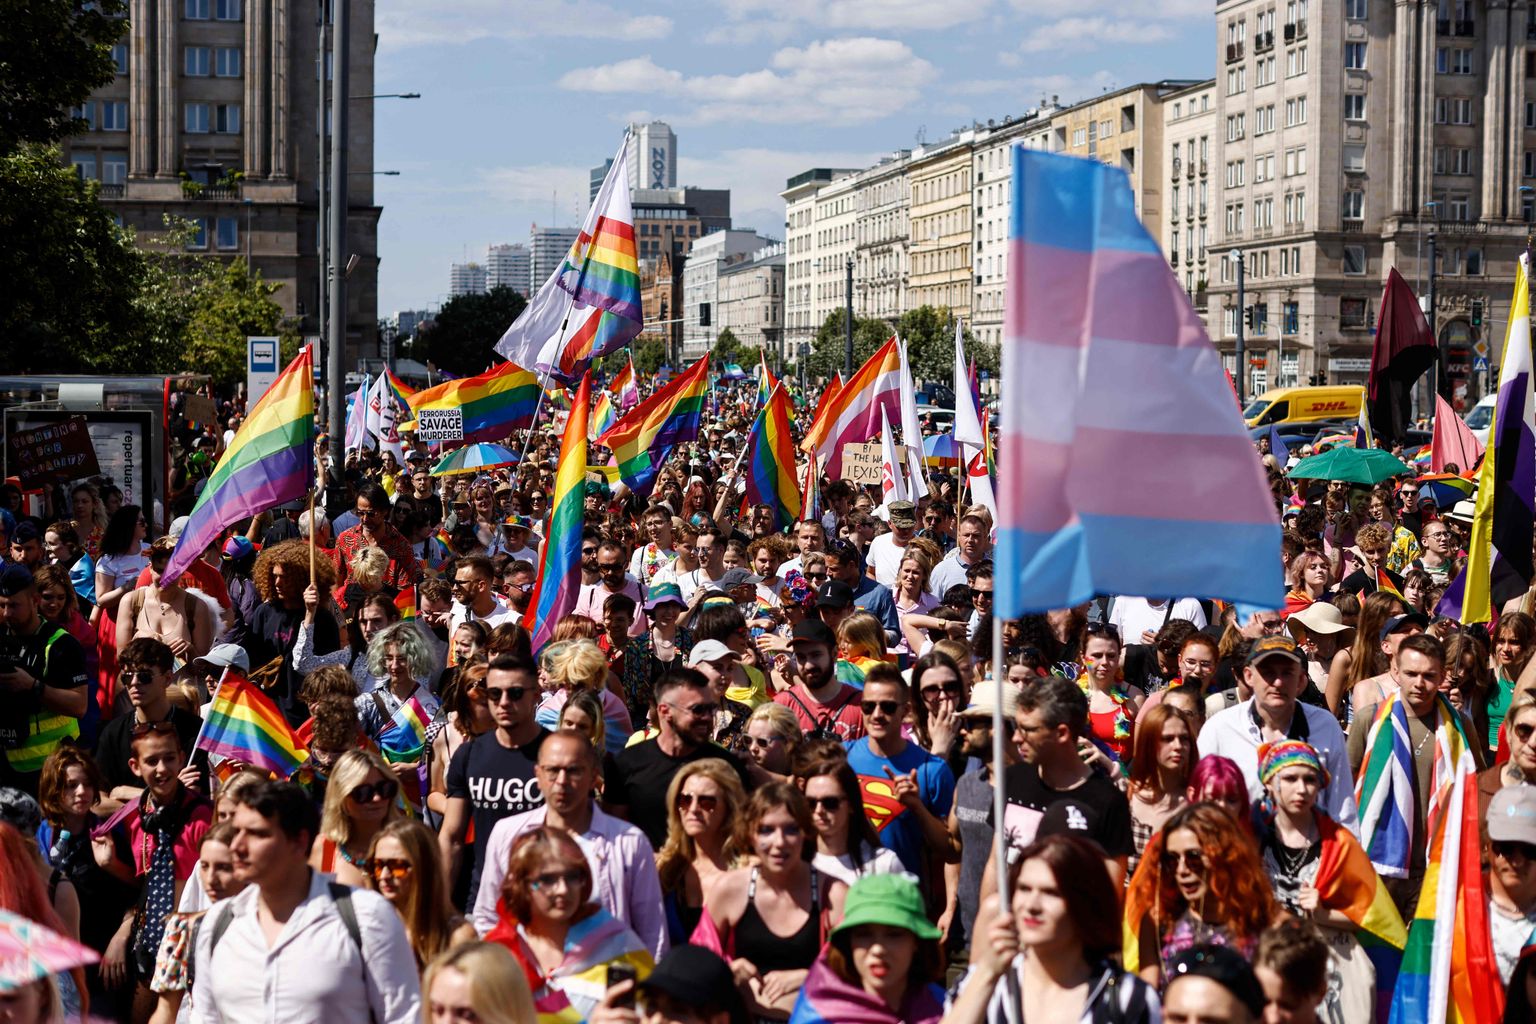 Nädalavahetusel Varssavis toimunud Poola ja Ukraina LGBT+ kogukondade ühine marss.